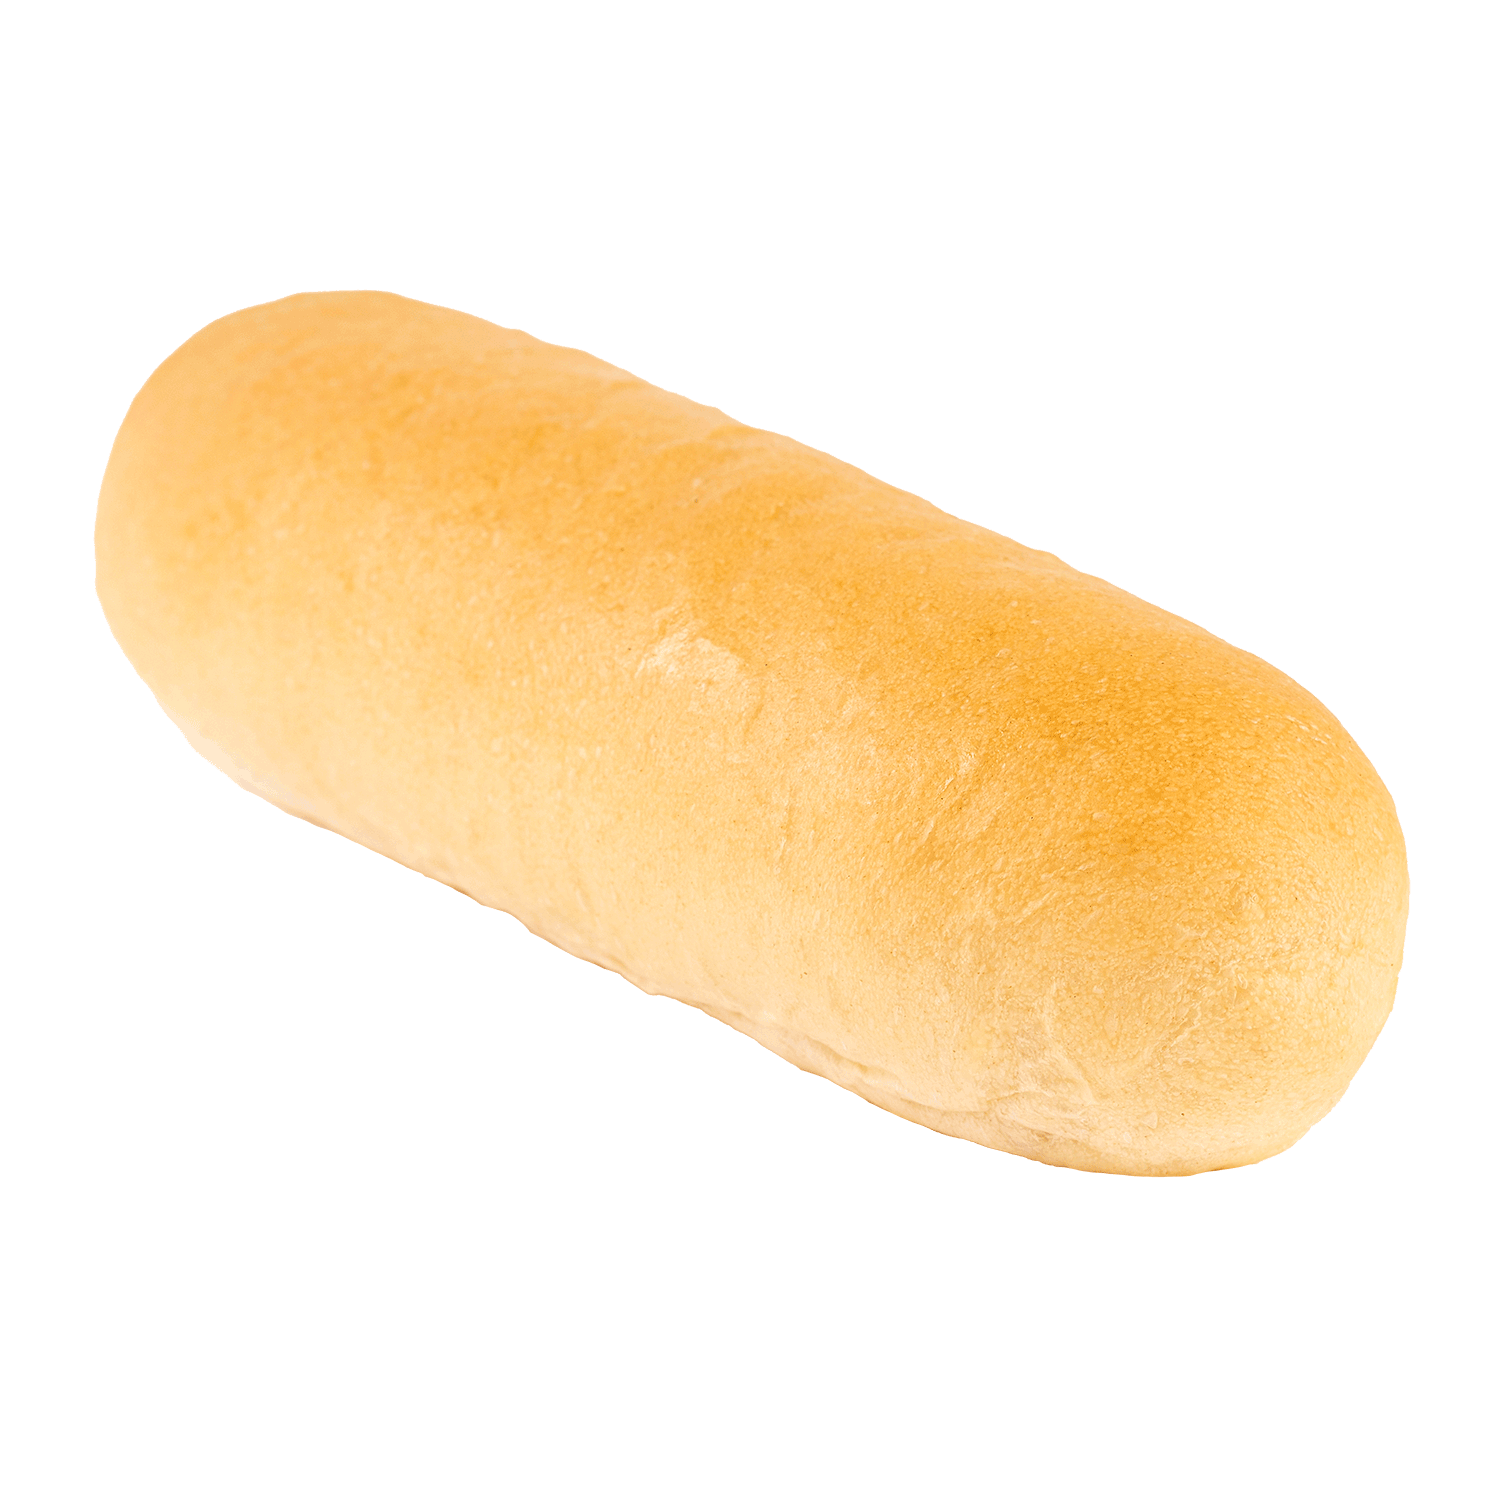 Hot Dog Bun Transparent Images